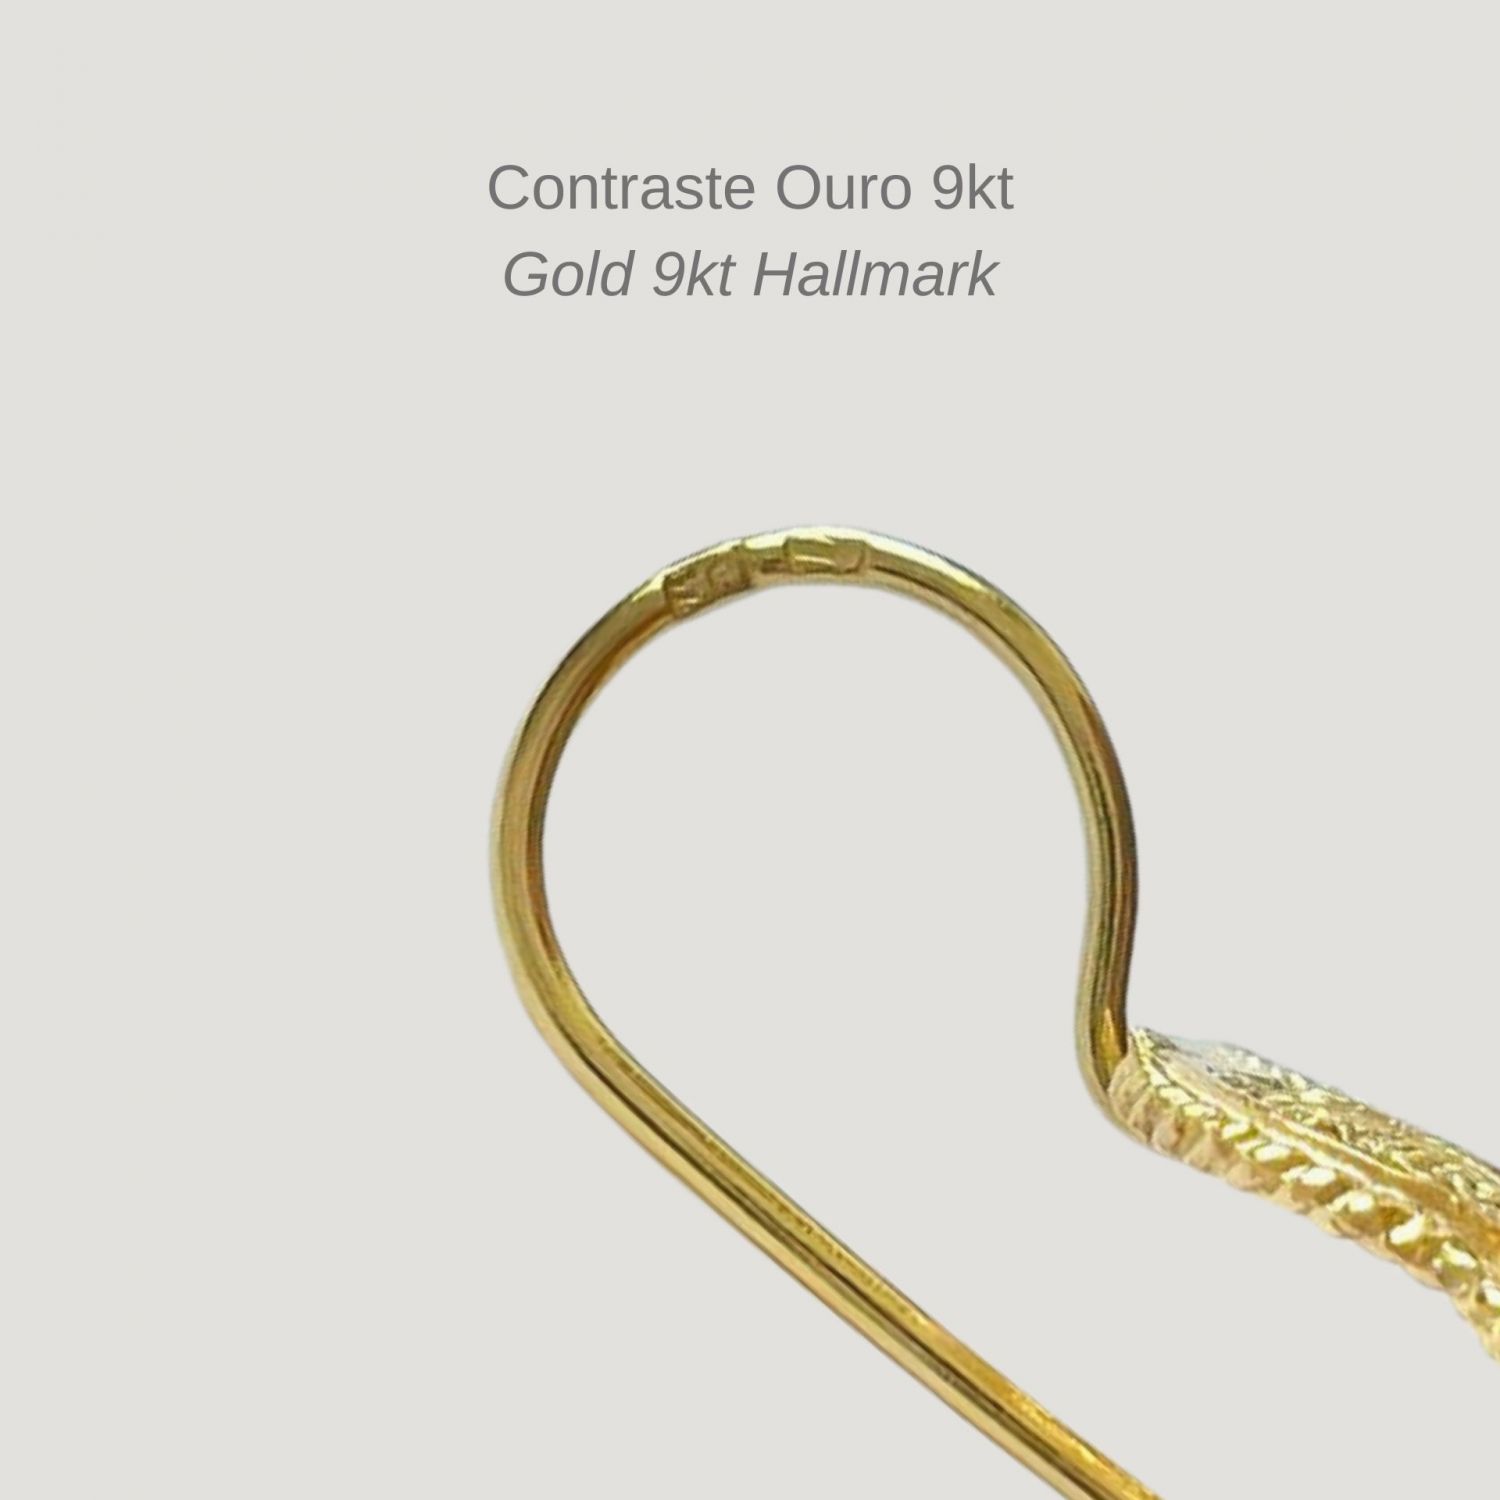 Earrings Heart of Viana M in 9Kt Gold 